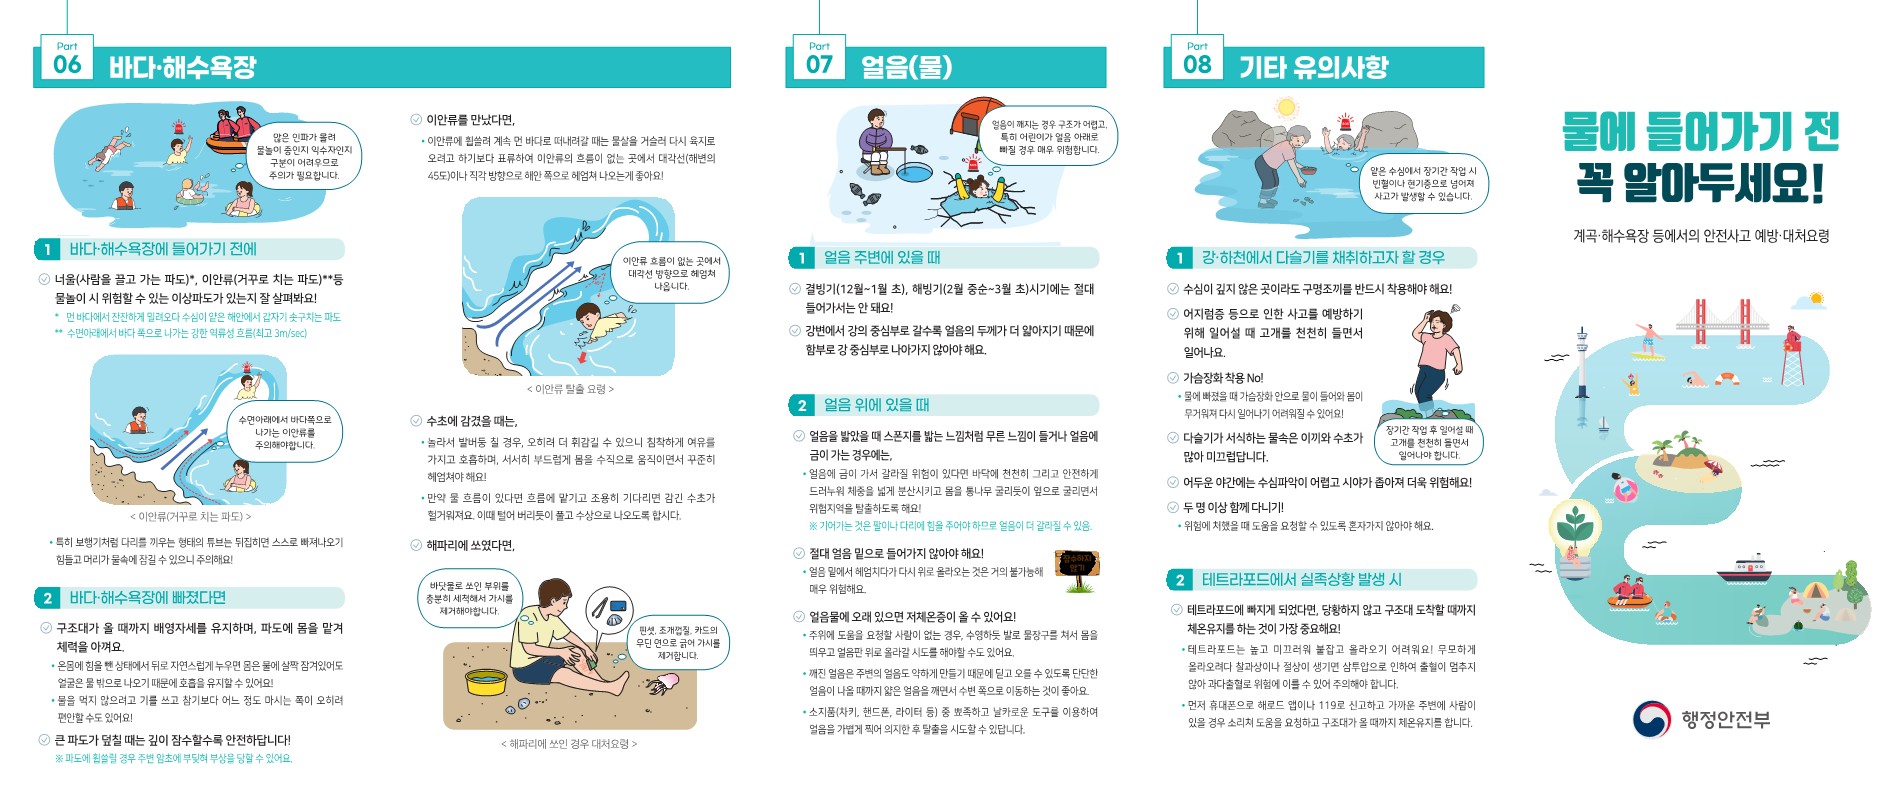 계곡·해수욕장 등에서의 안전사고 예방·대처요령_홍보리플릿(2편).jpg